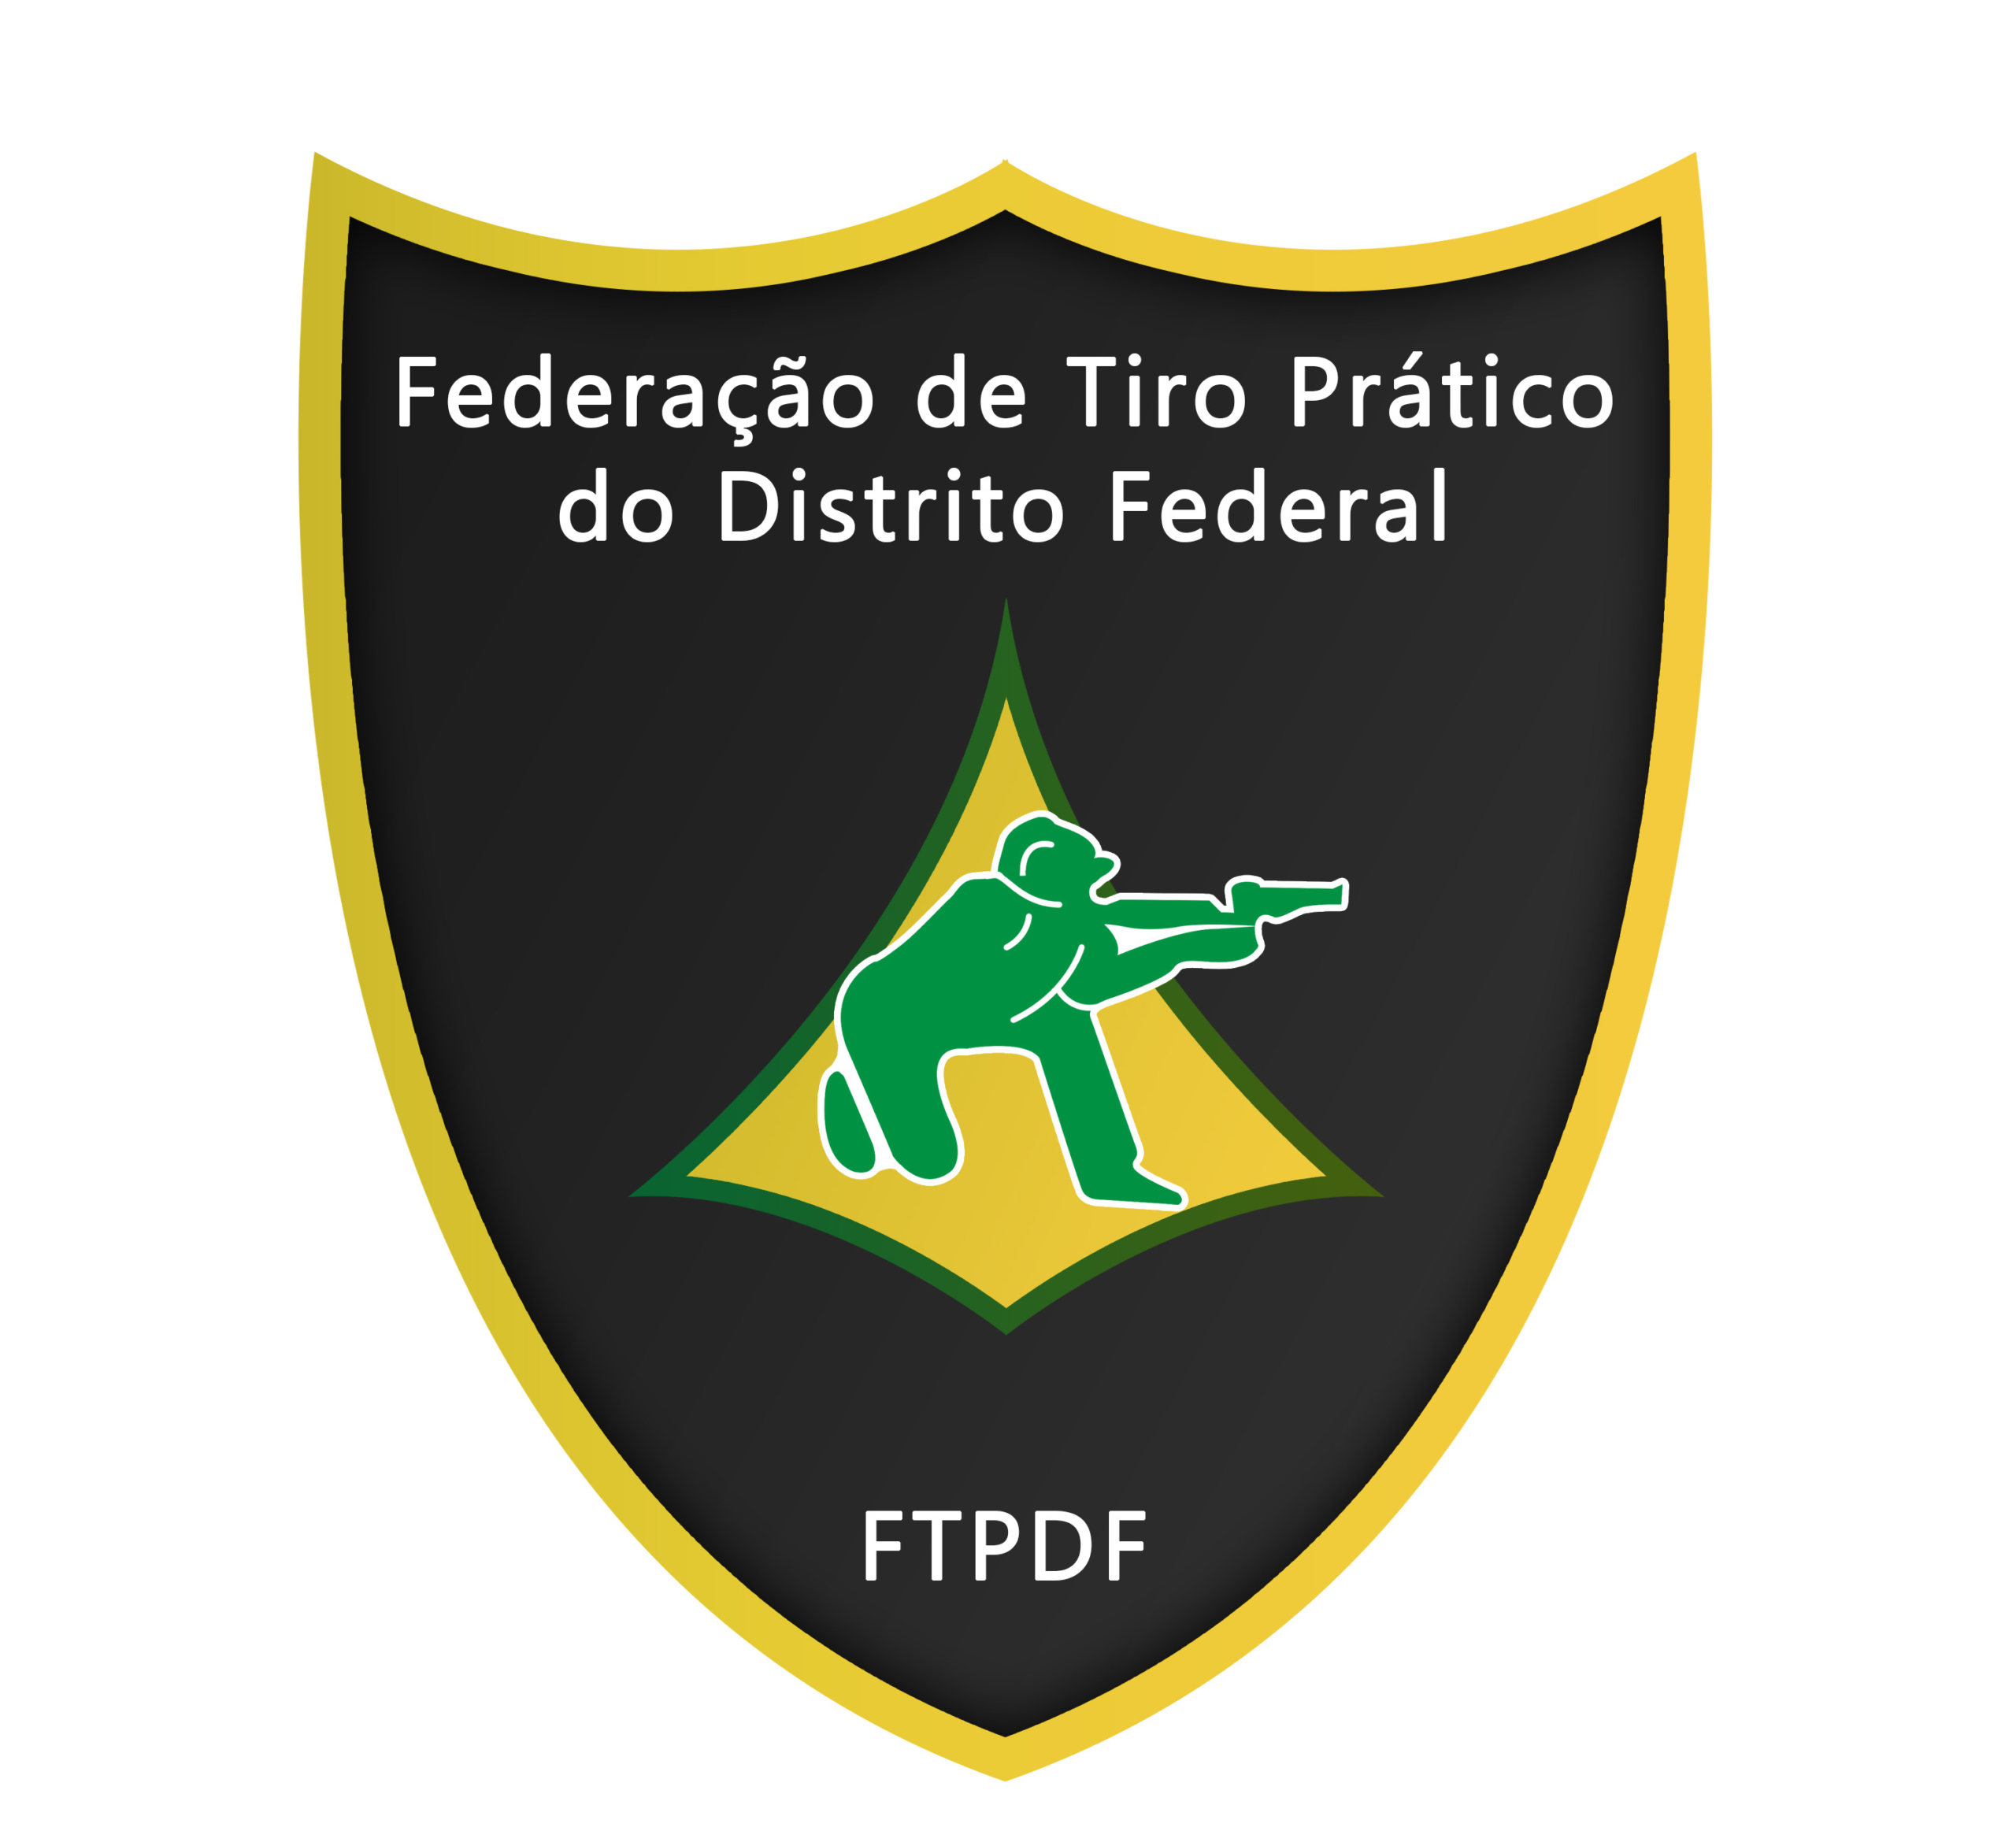 ftpdf-logo2014_5a96aebd715b1.jpg